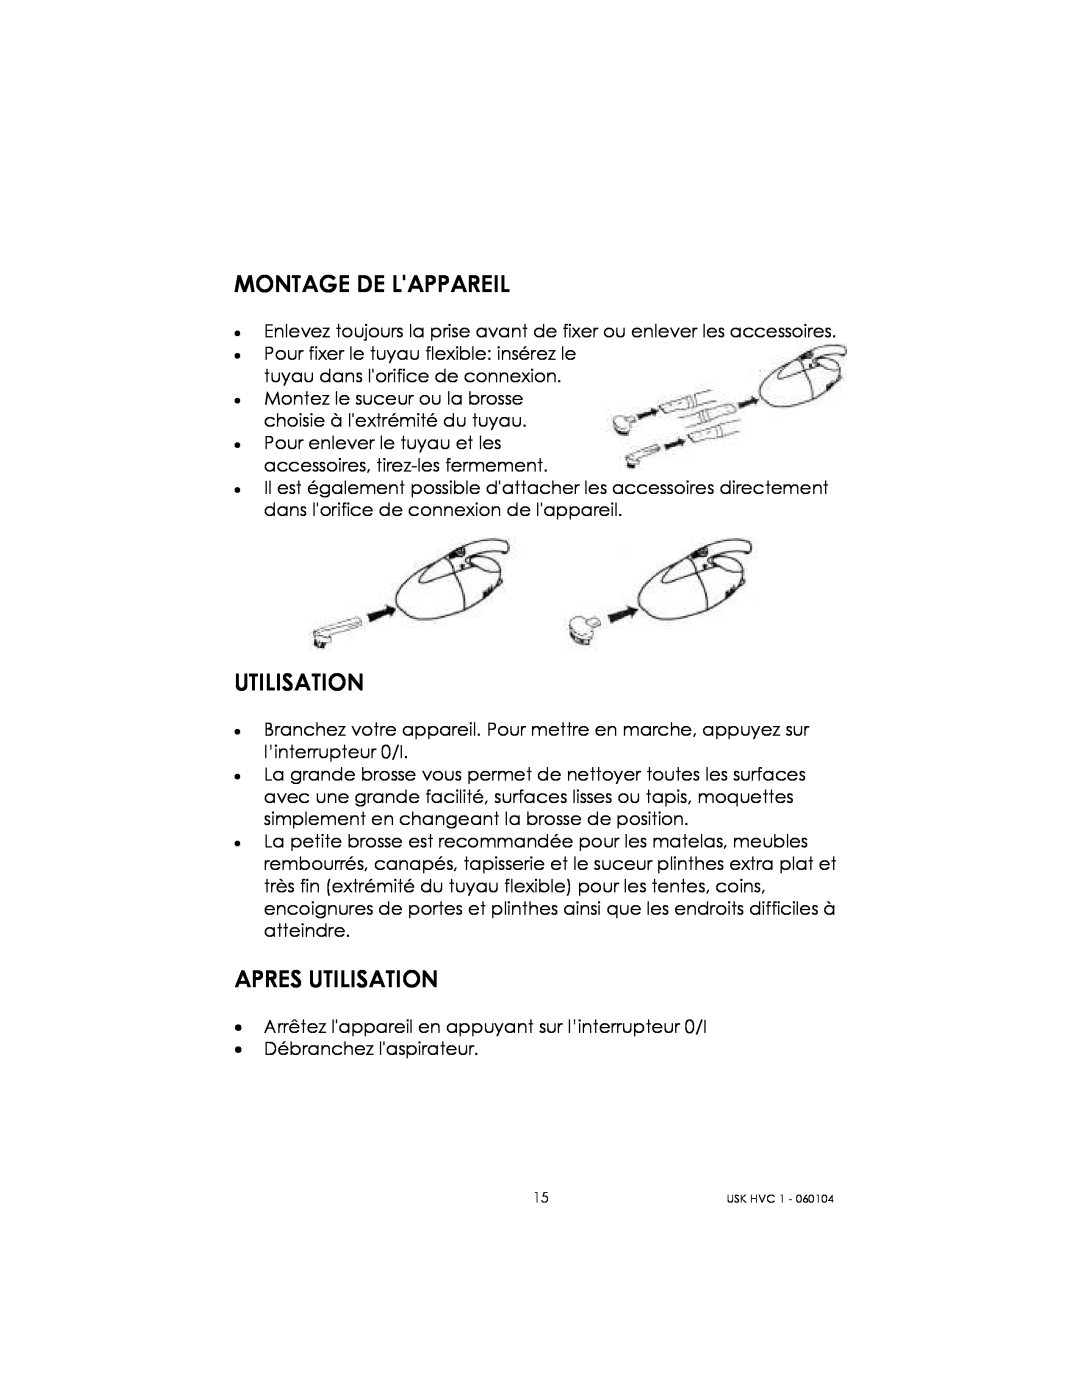 Kalorik USK HVC 1 - 060104 manual Montage De Lappareil, Apres Utilisation 